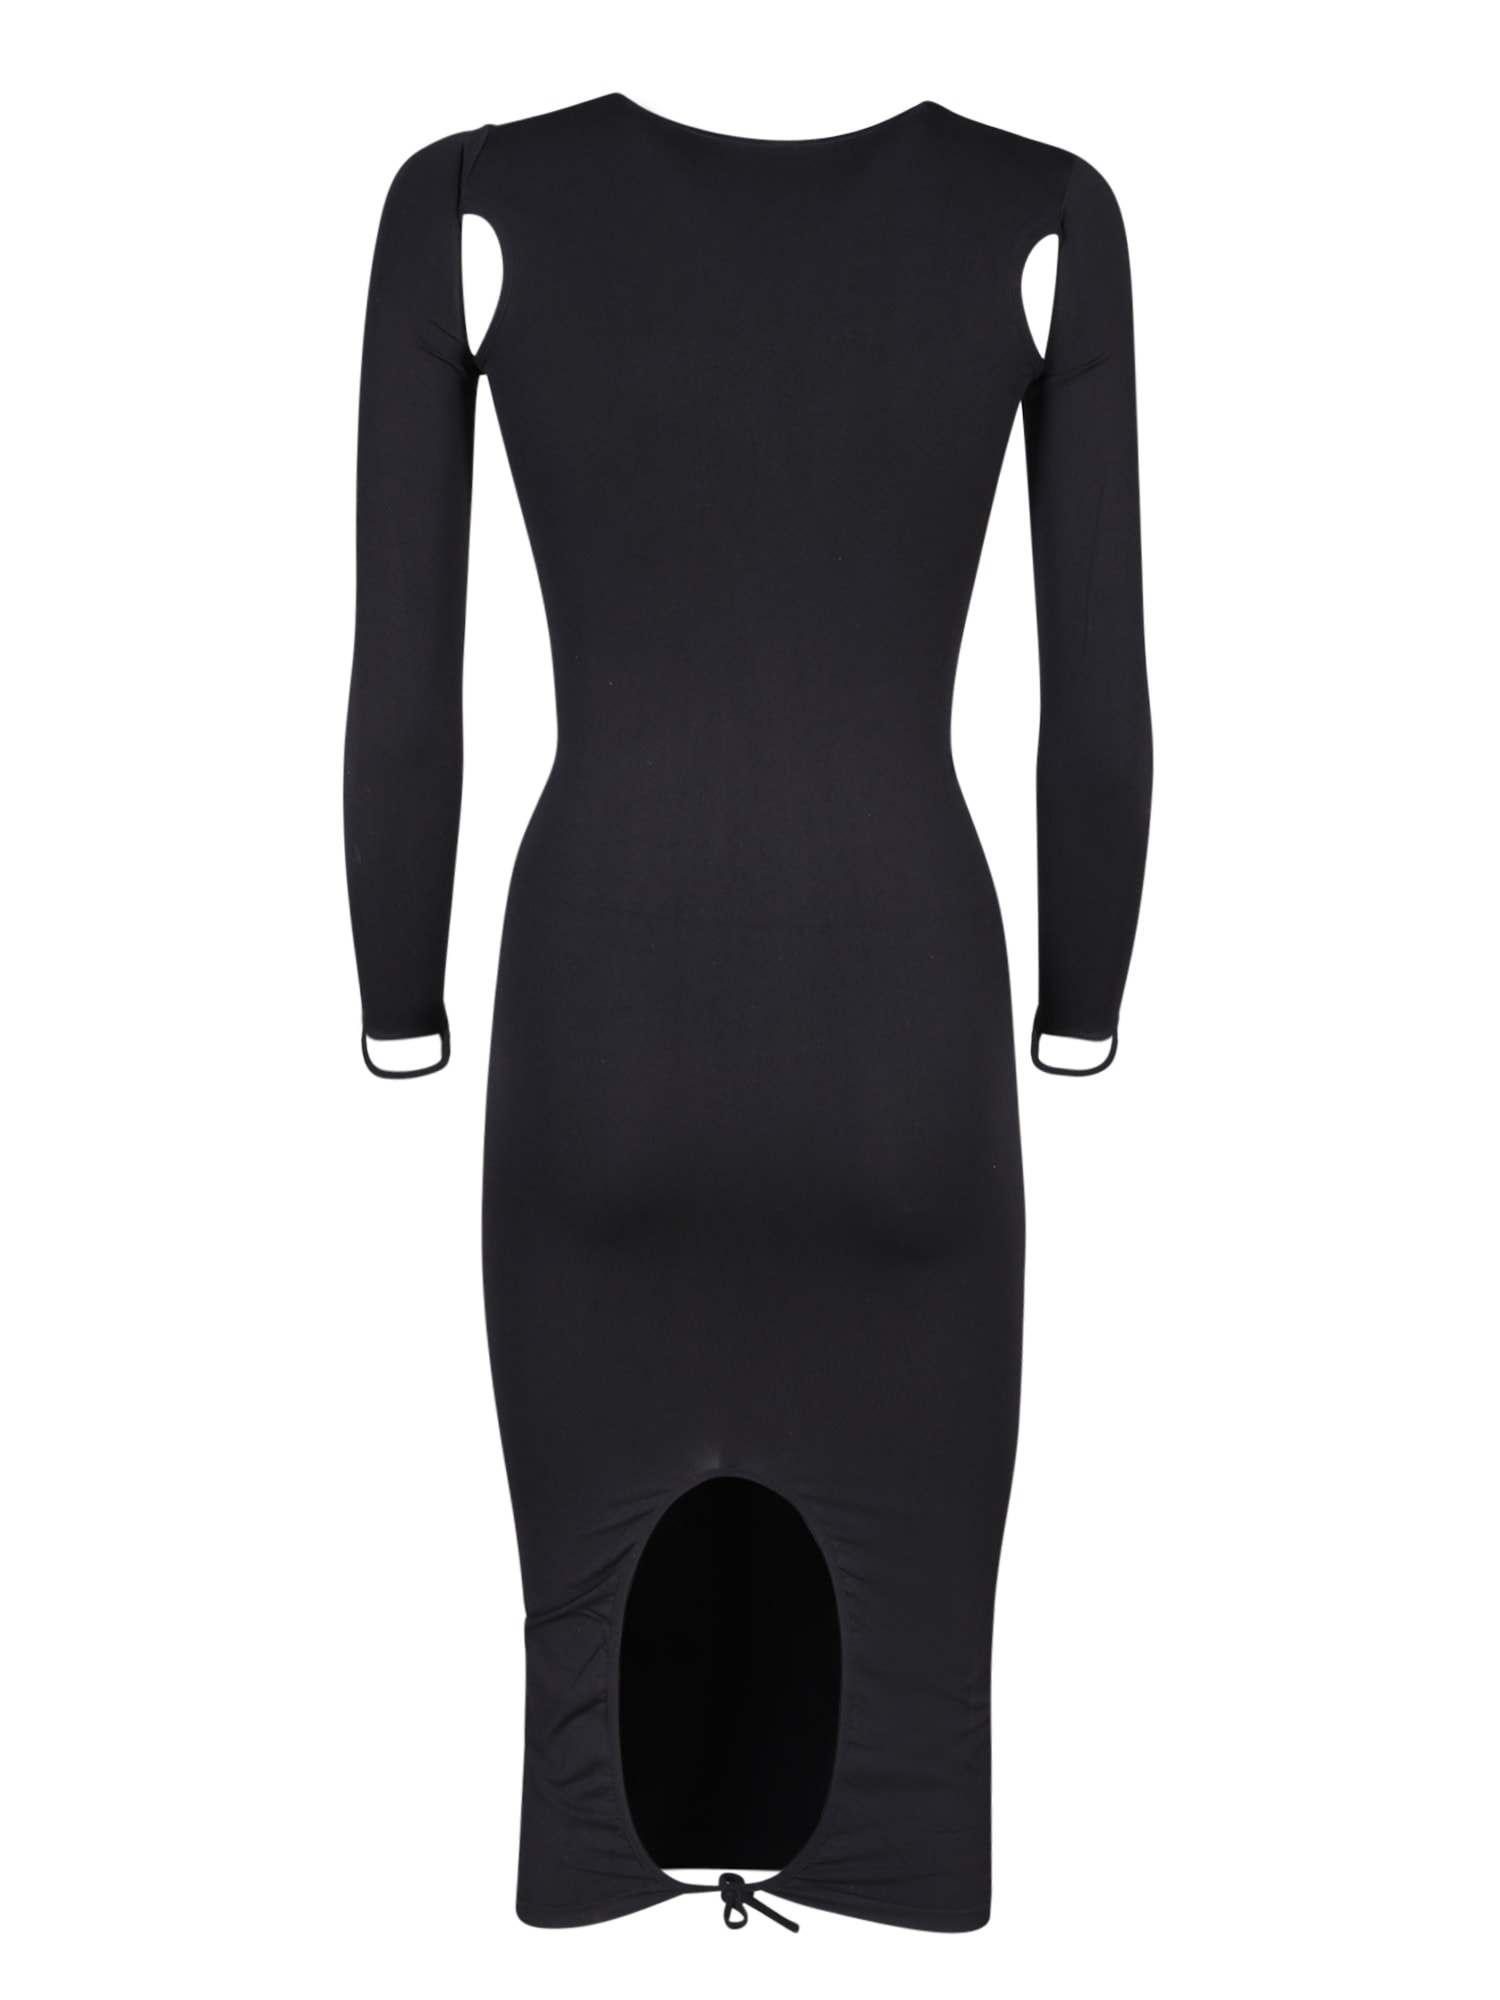 Shop Andreädamo Cut-out Details Black Dress